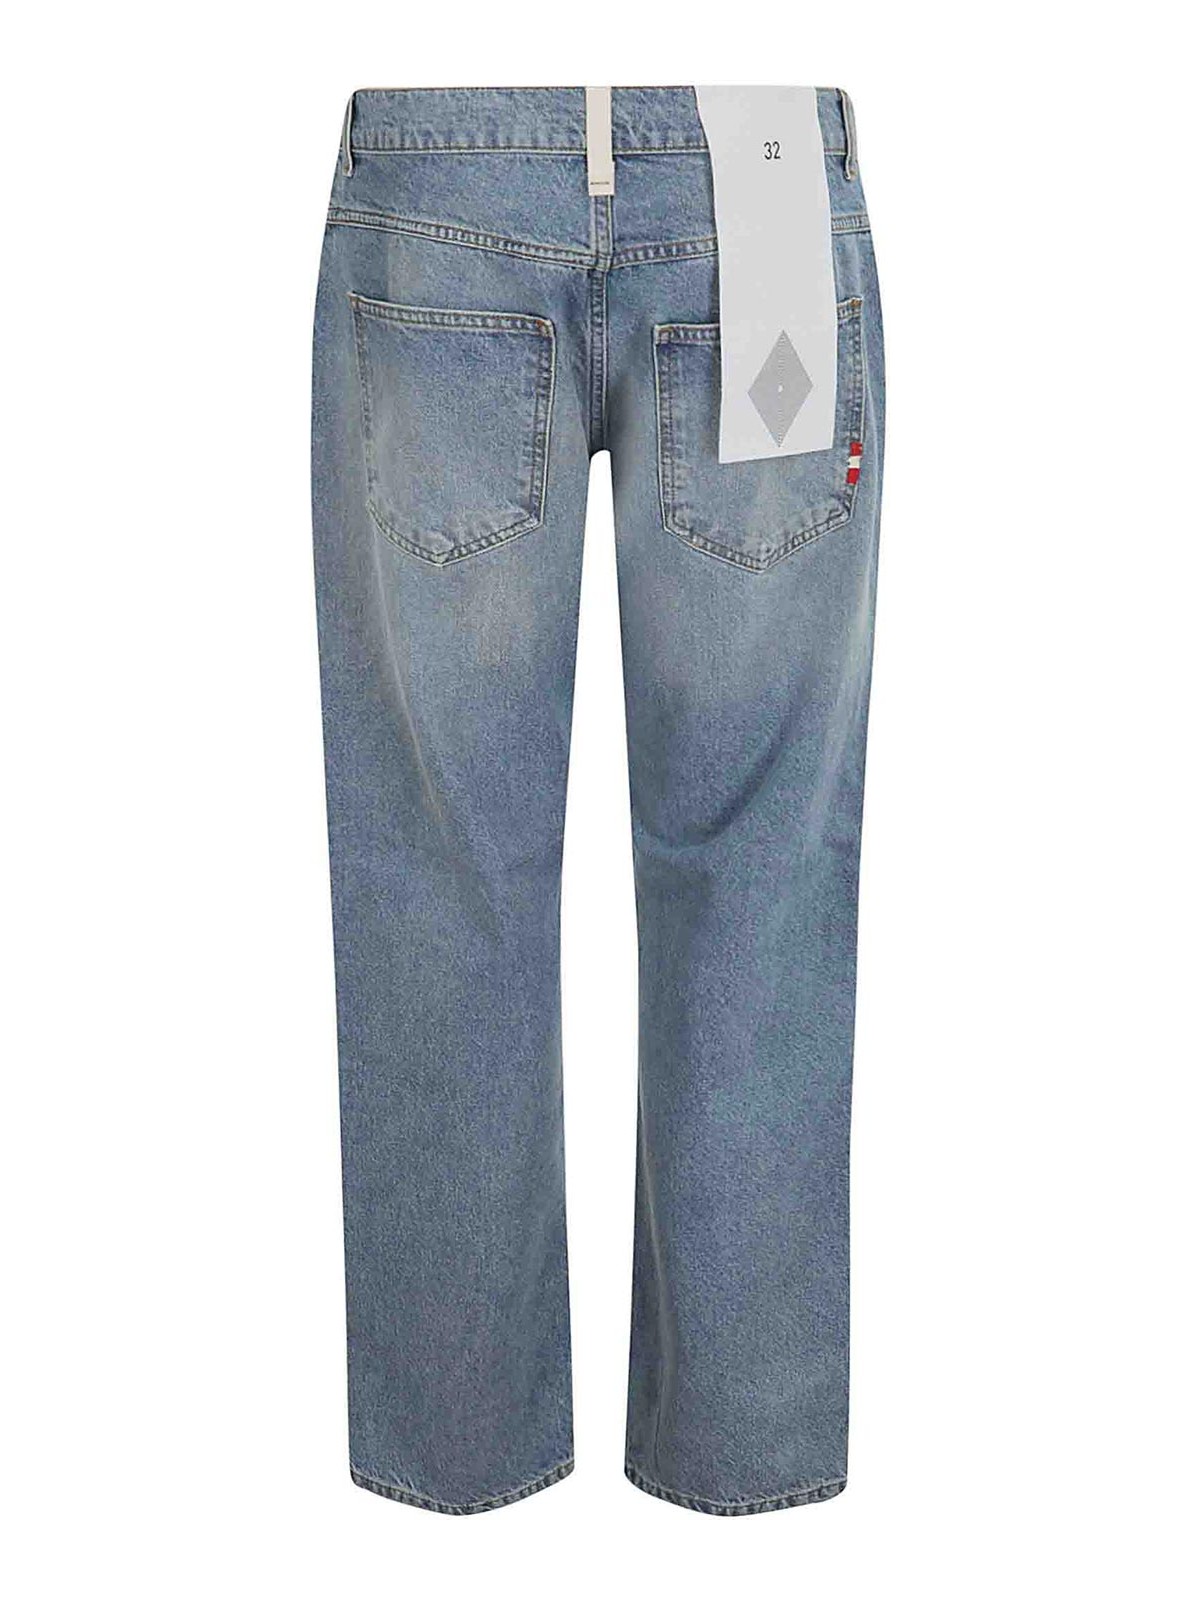 Shop Amish Denim Jeans In Dark Wash